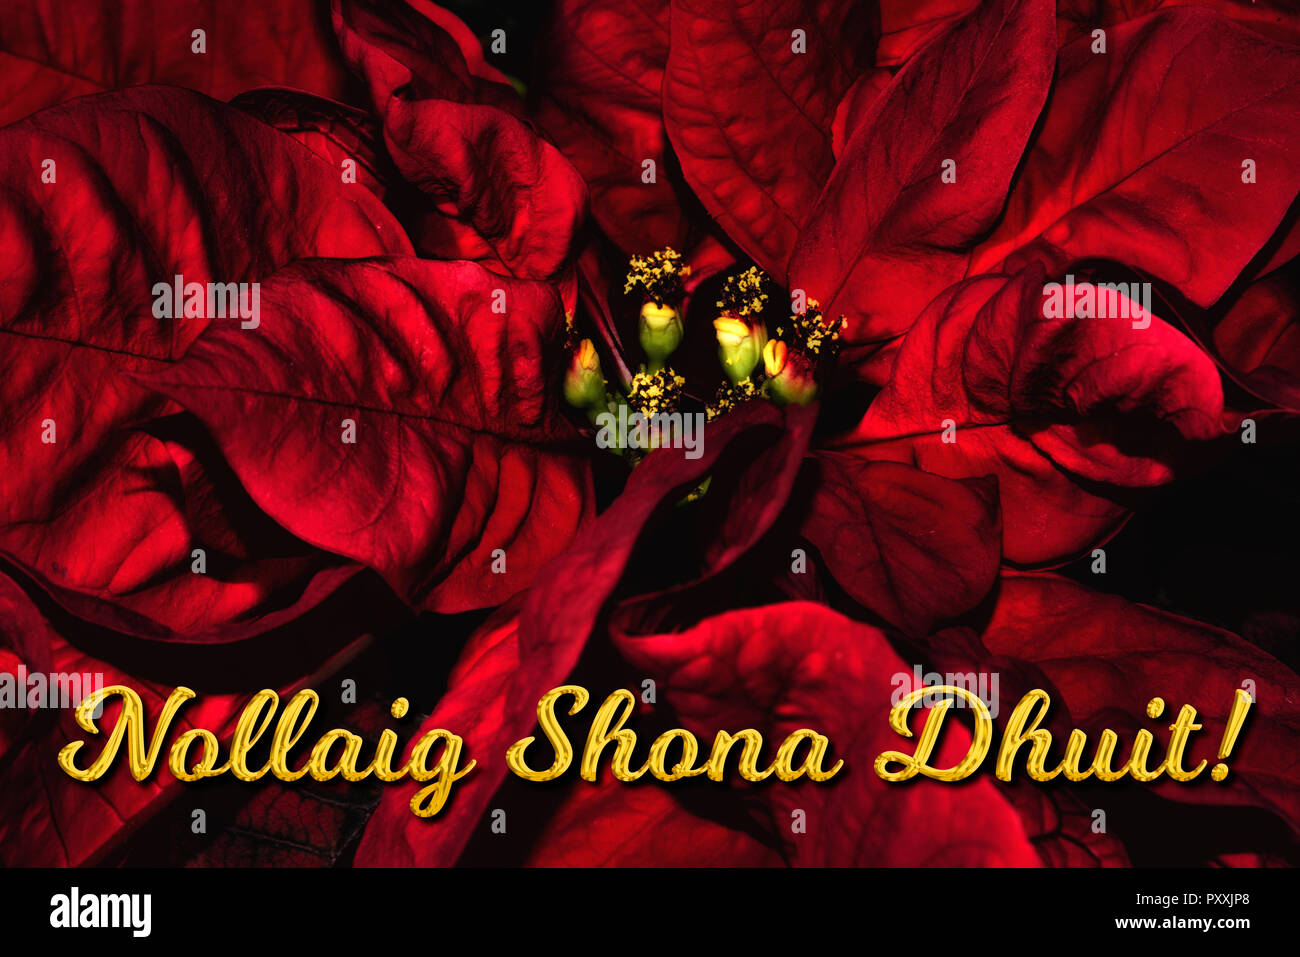 Il gaelico irlandese testo 'Nollaig Shona Dhuit" significa "Buon Natale", che si trova di fronte a una red poinsettia. La vacanza perfetta stagione della scheda Messaggi di saluto. Foto Stock